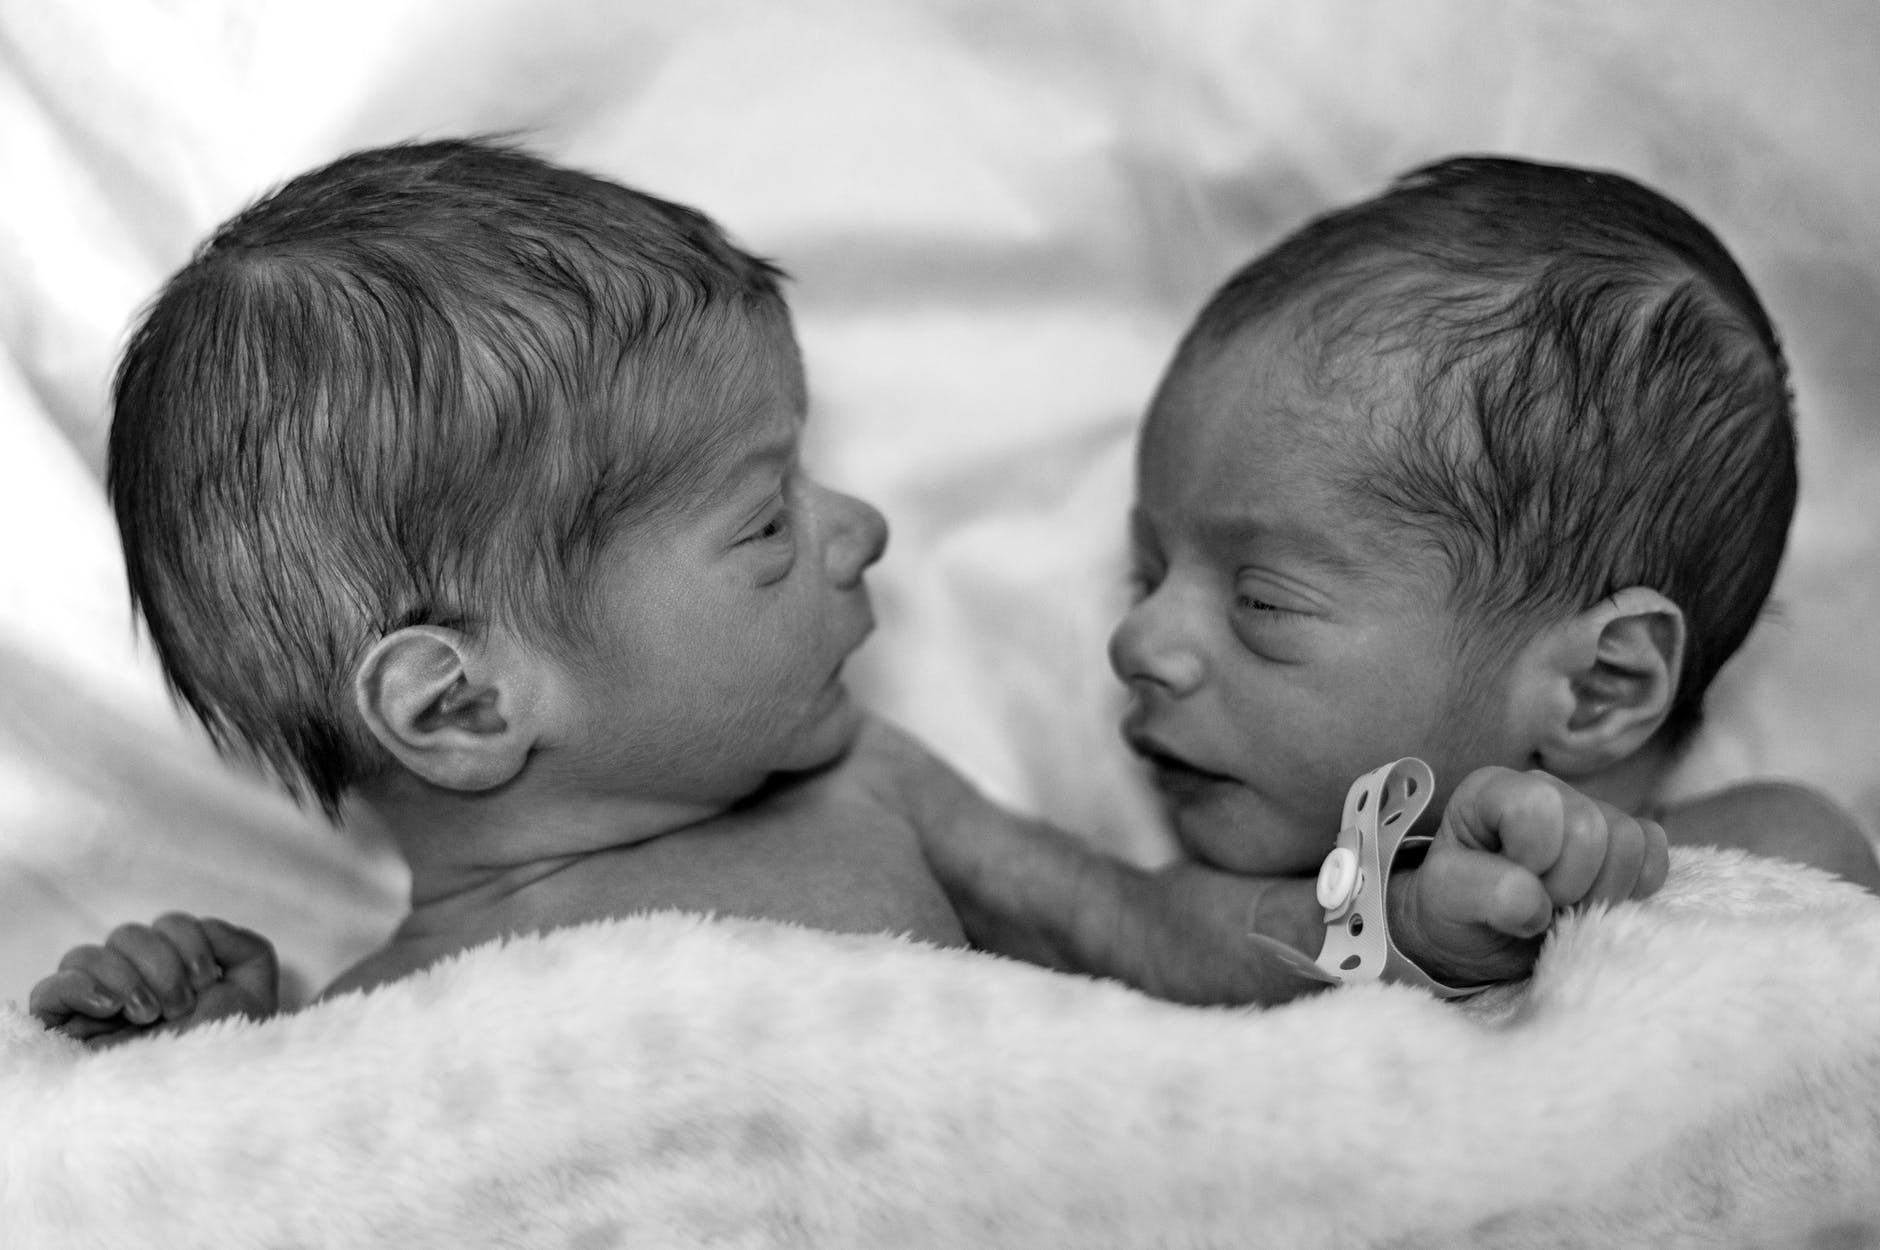 Ενα αγοράκι στην Ιταλία γεννήθηκε δύο μήνες μετά το δίδυμο αδελφάκι του!